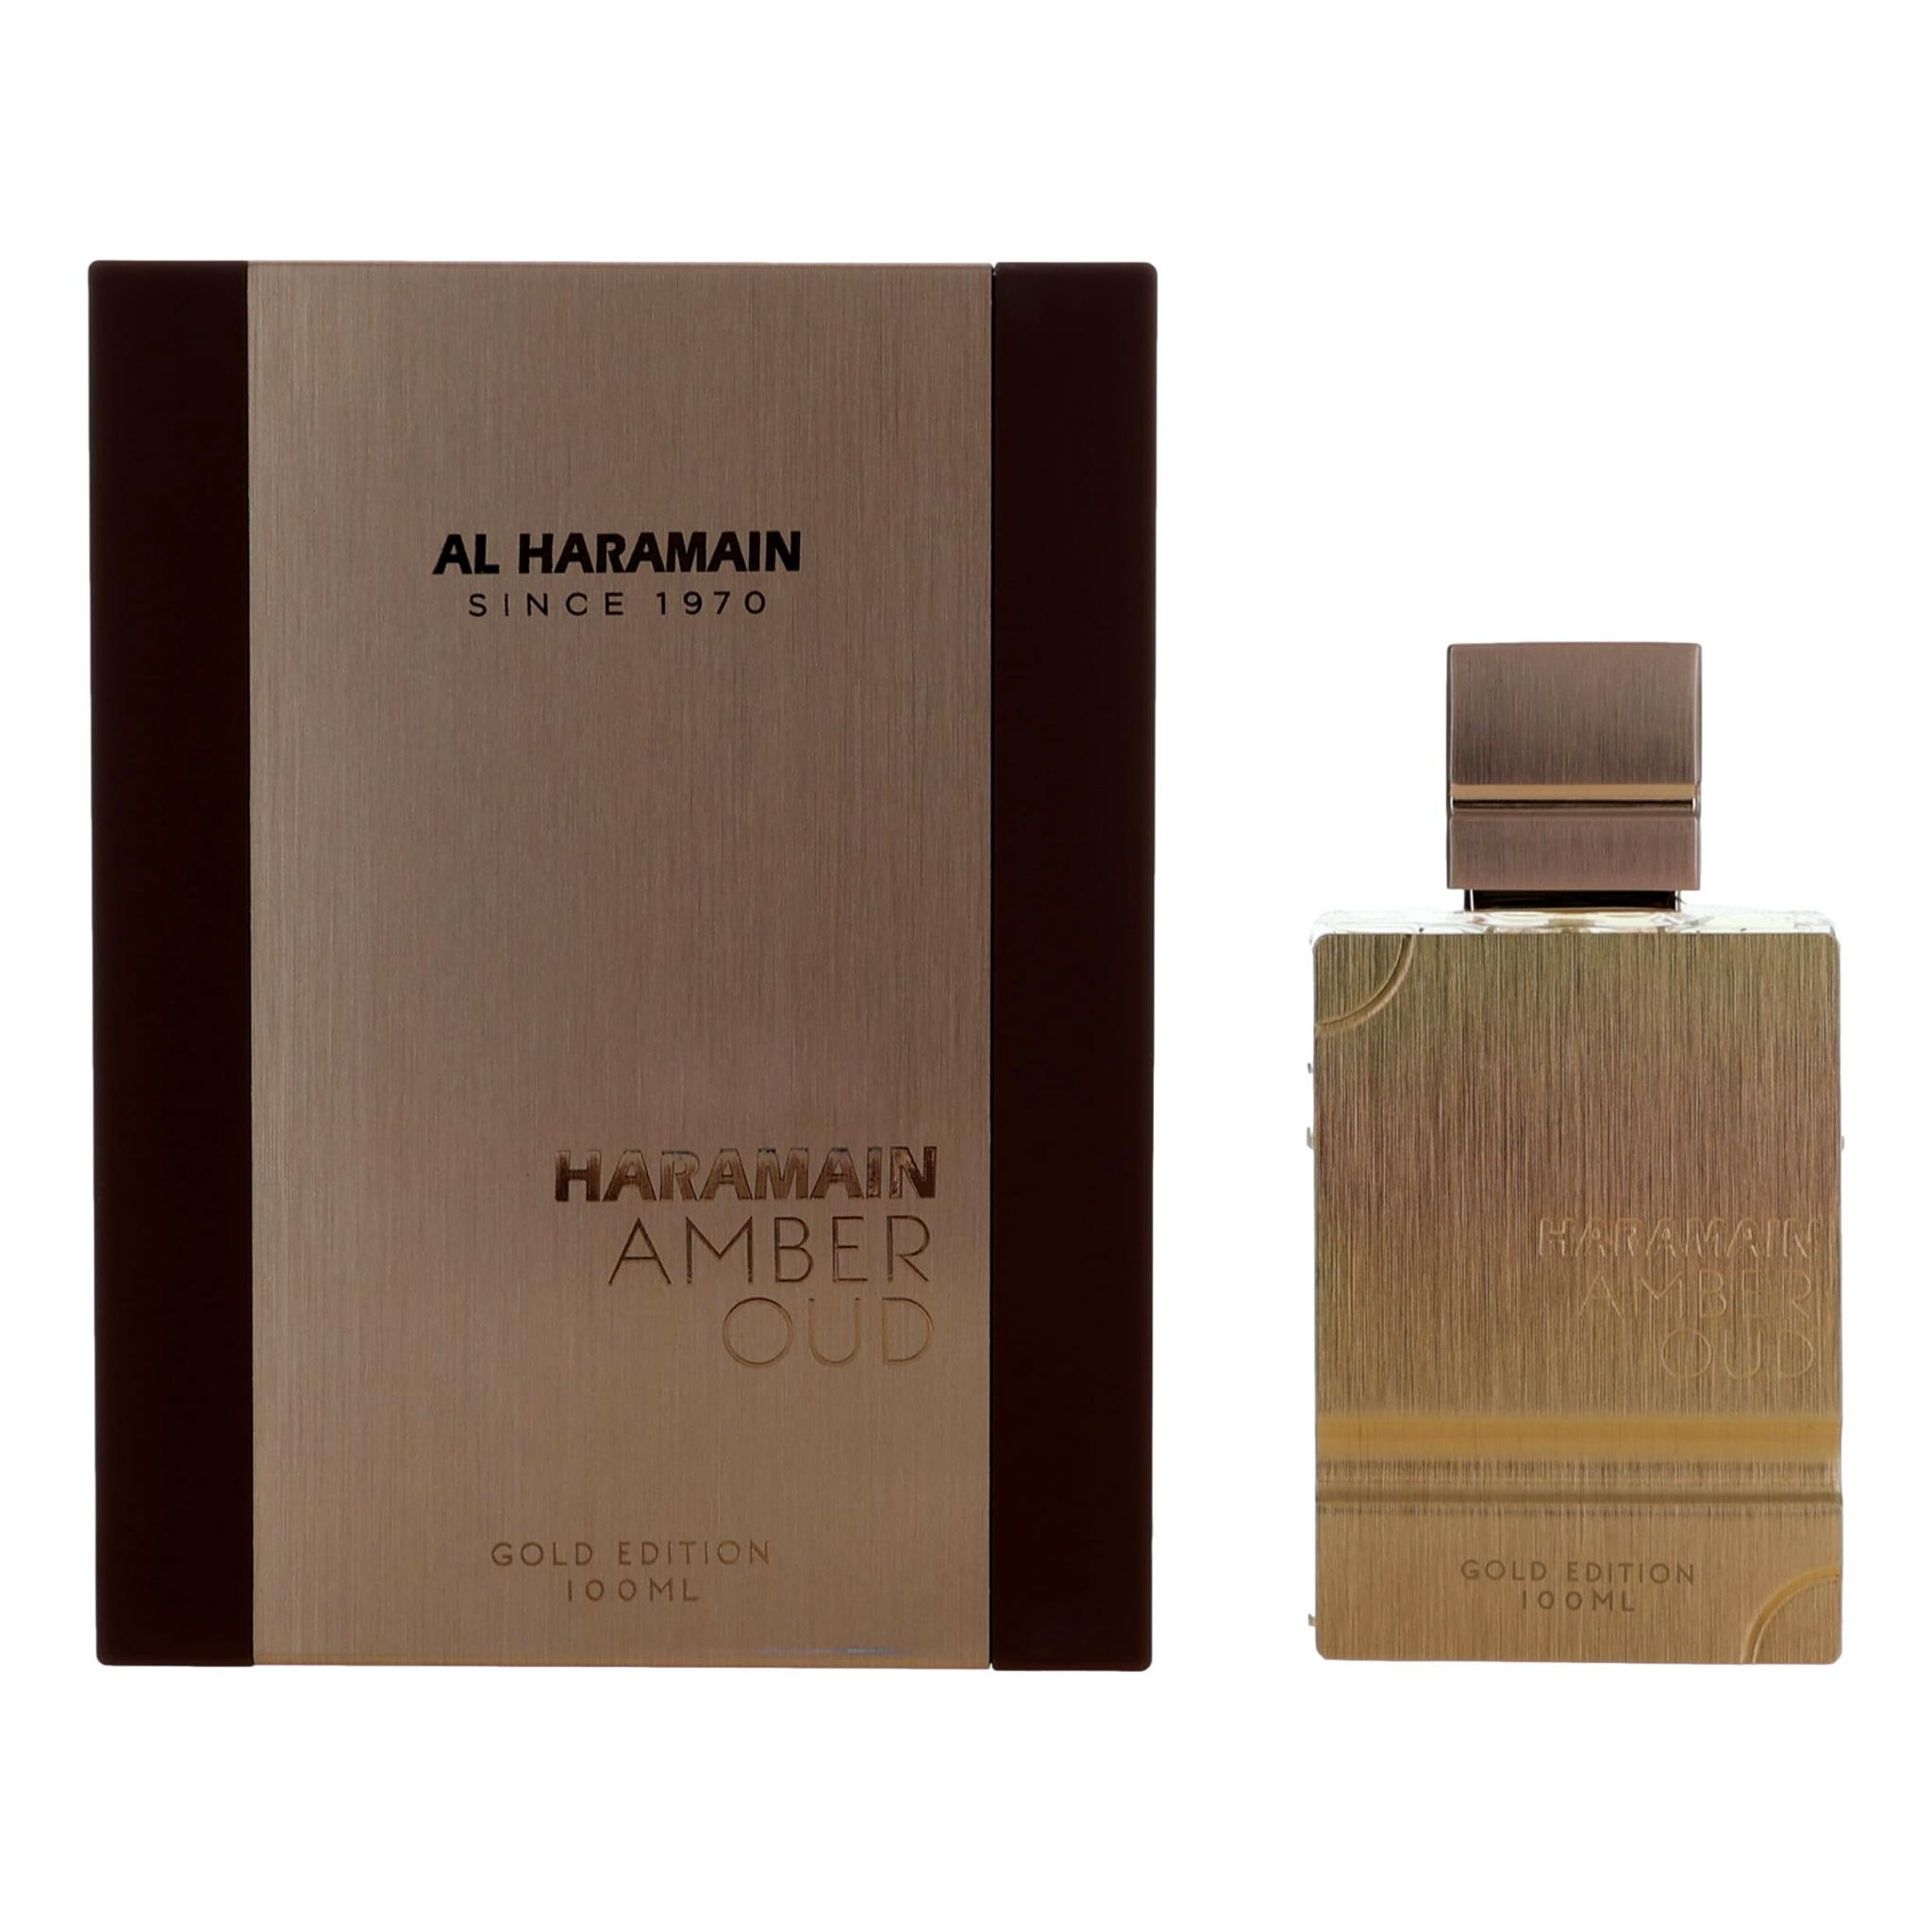 Photos - Women's Fragrance Al Haramain Amber Oud Gold Edition Eau De Parfum Spray - 3.3oz 